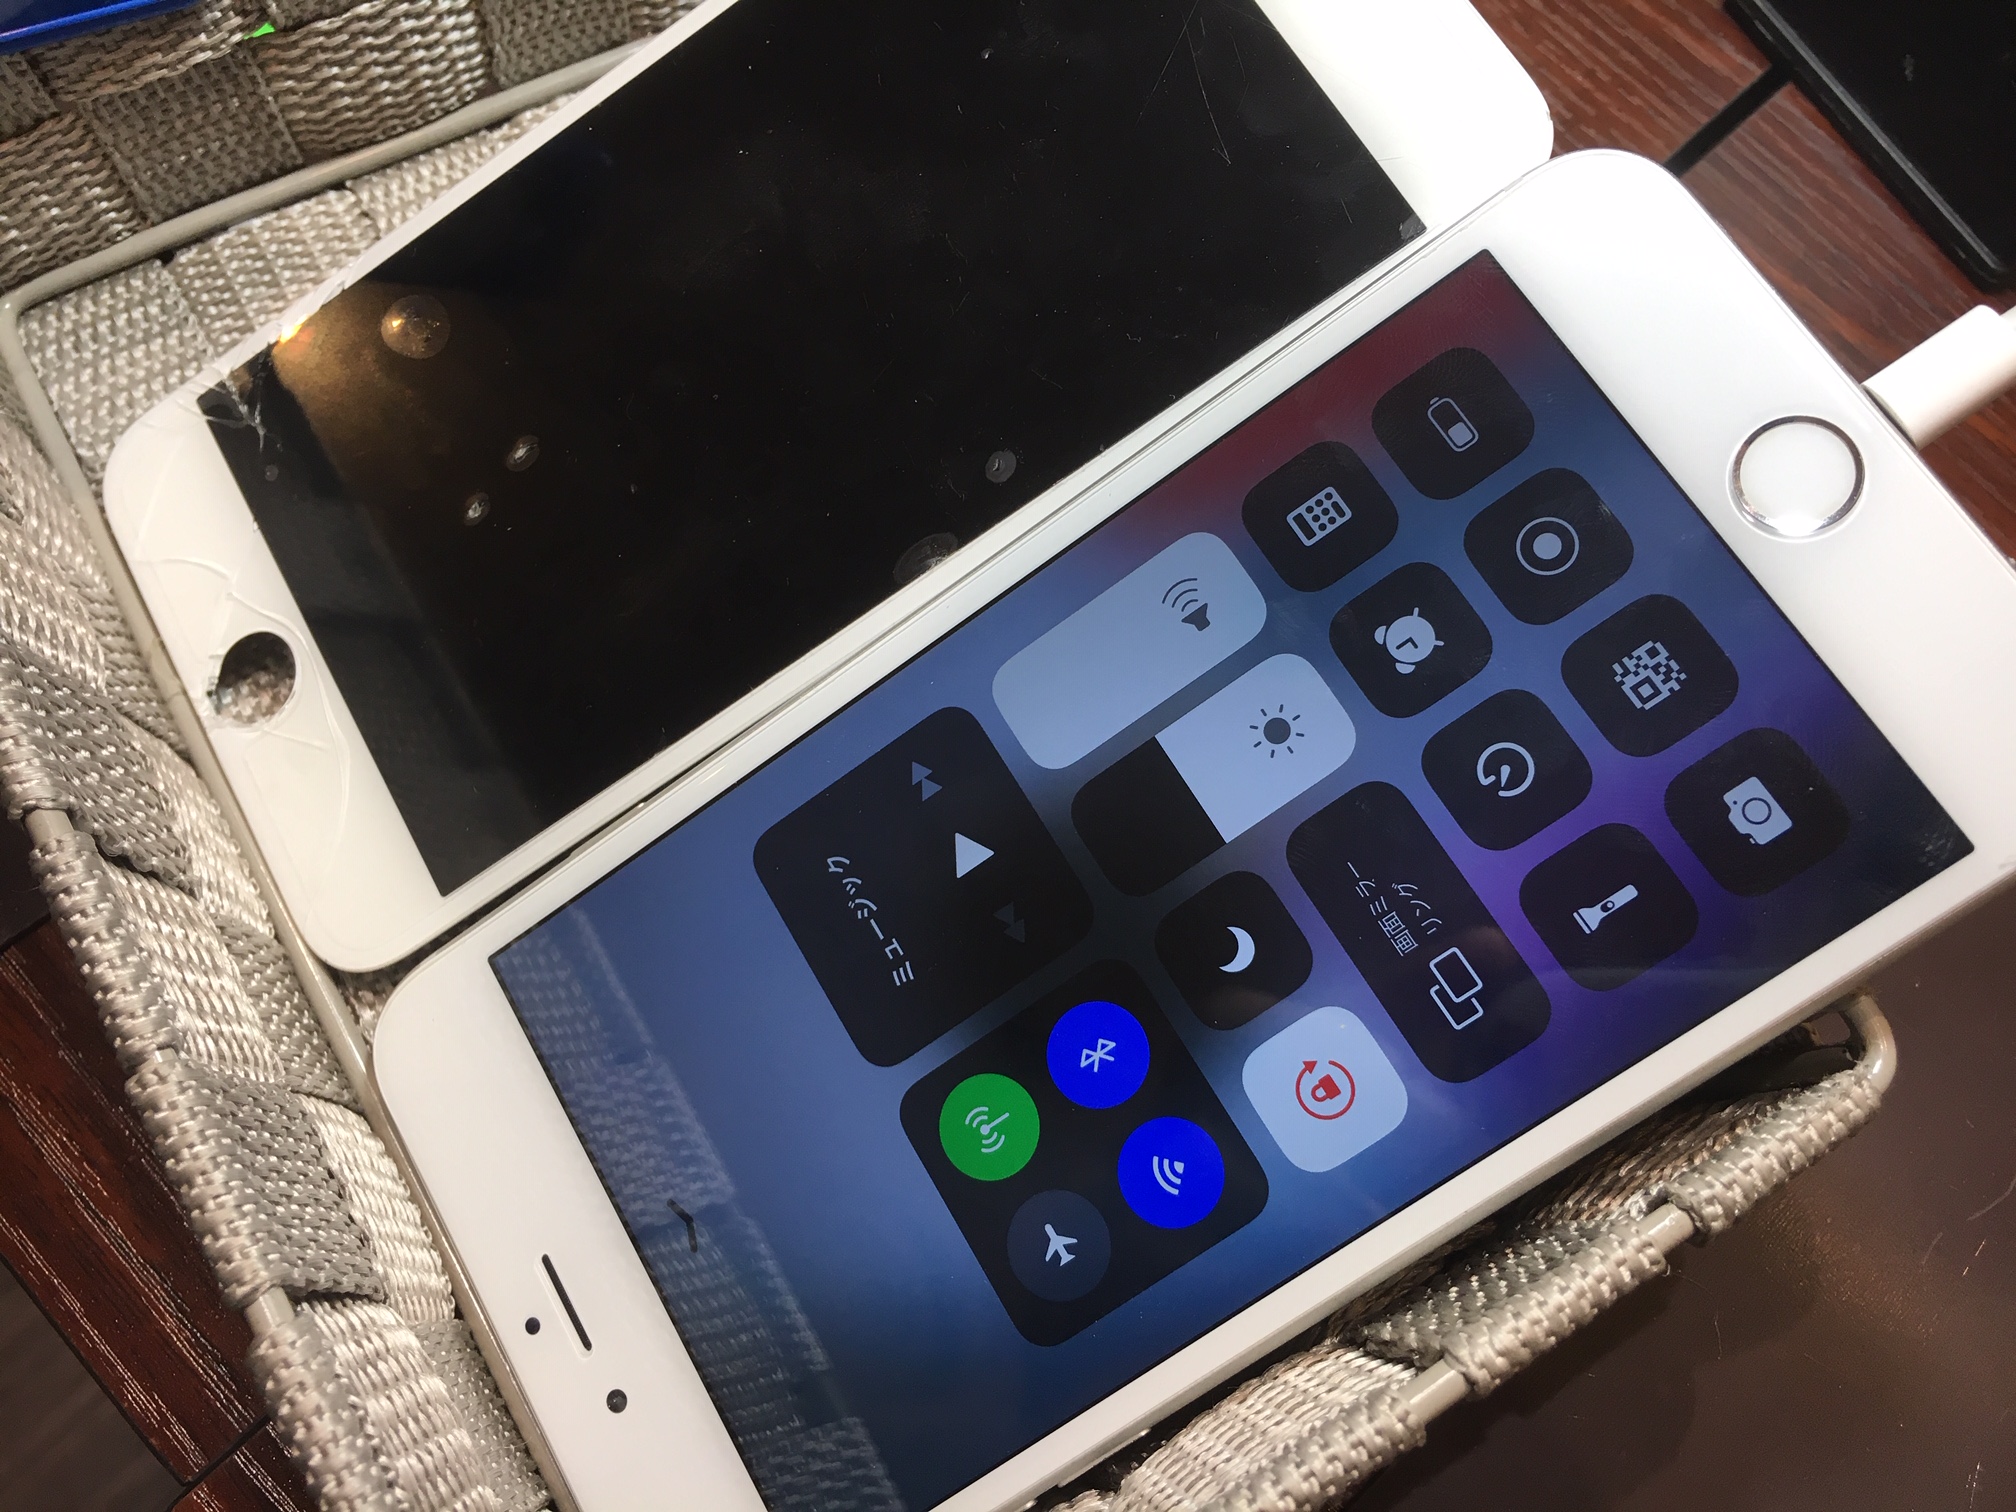 iPhone6+　チョイワレの状態でもちゃんと修理しておけば、時間もお金も節約できますよ★　尼崎・伊丹・川西のiPhone修理専門店スマートクール